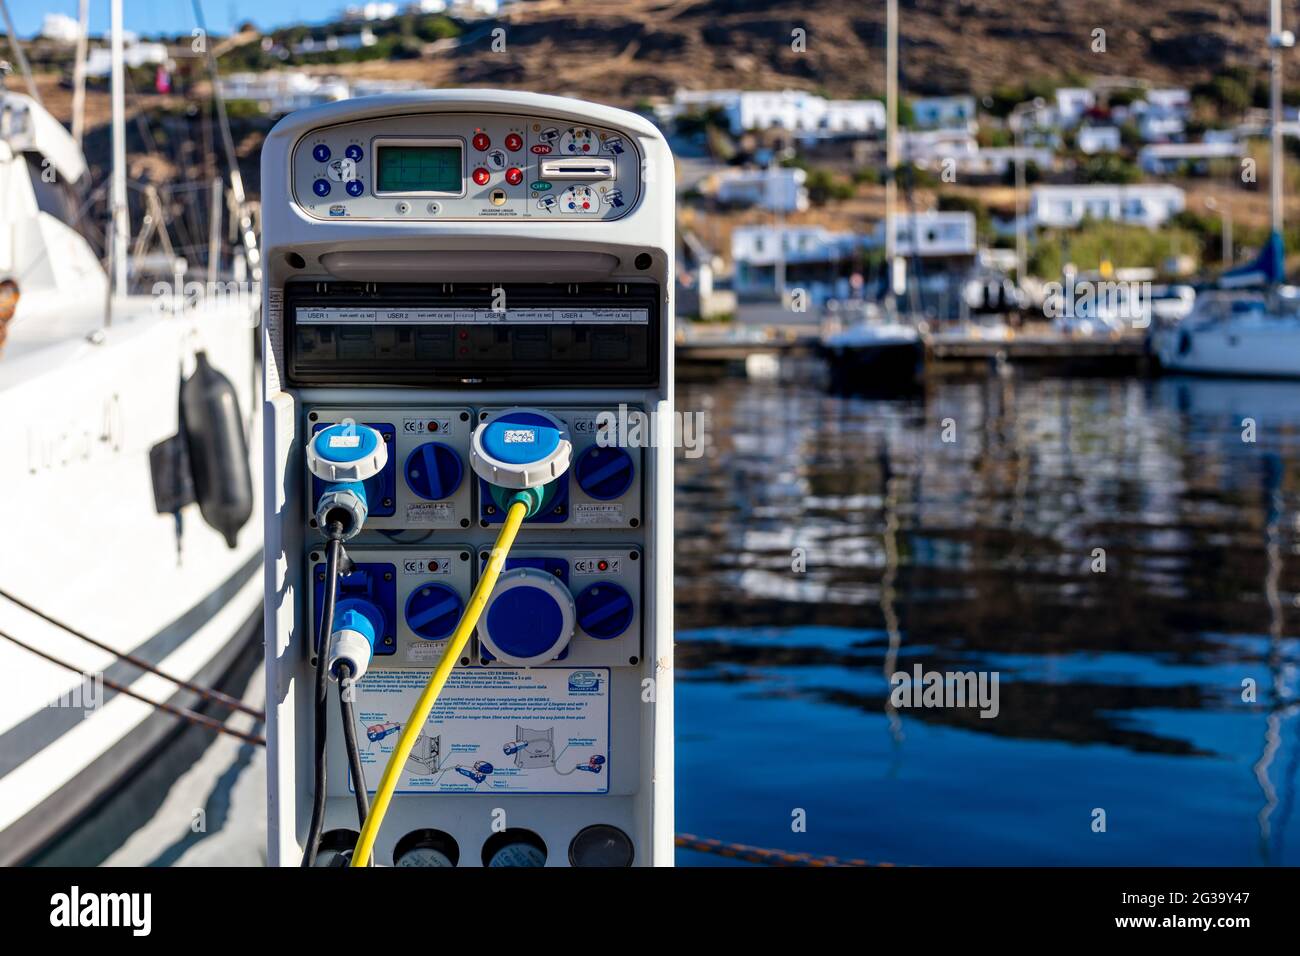 Île de Mykonos, Cyclades, Grèce. 22 mai 2021. Station d'alimentation de Marina, charge des prises électriques pour les navires dans le port. Alimentation électrique et eau pour Banque D'Images